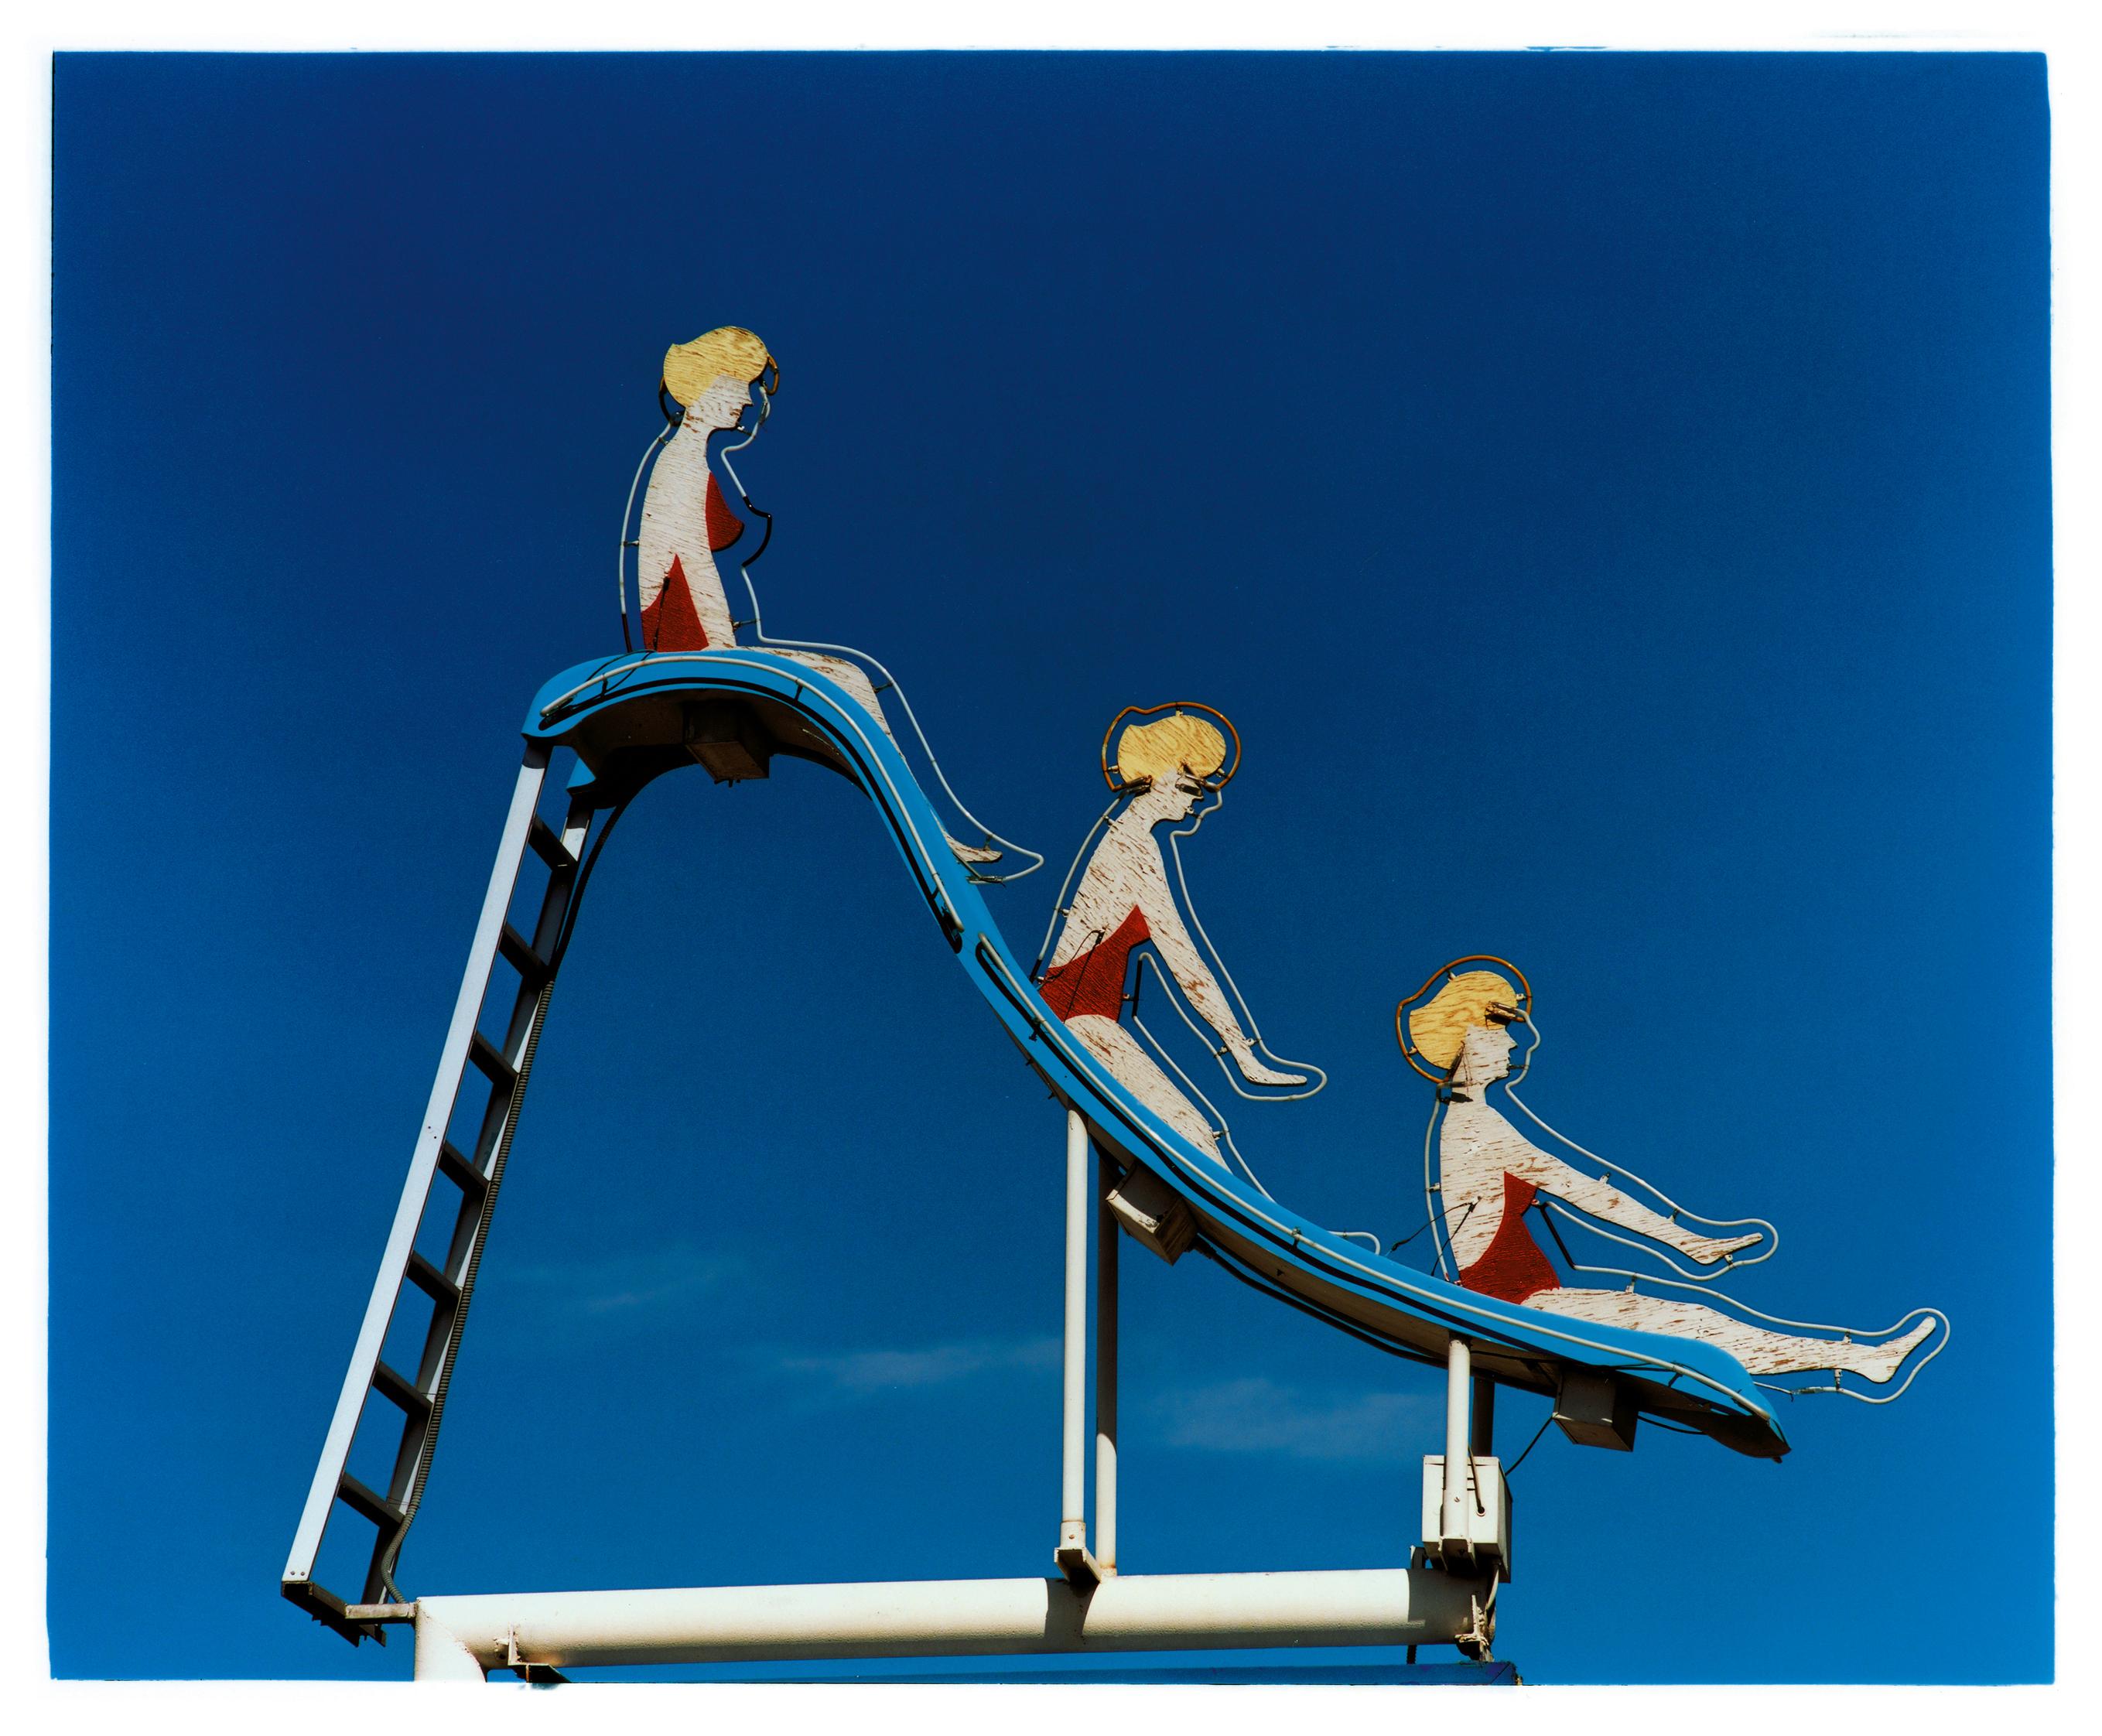 Pool Slide, Las Vegas, Nevada - Photographie pop art américaine en couleur